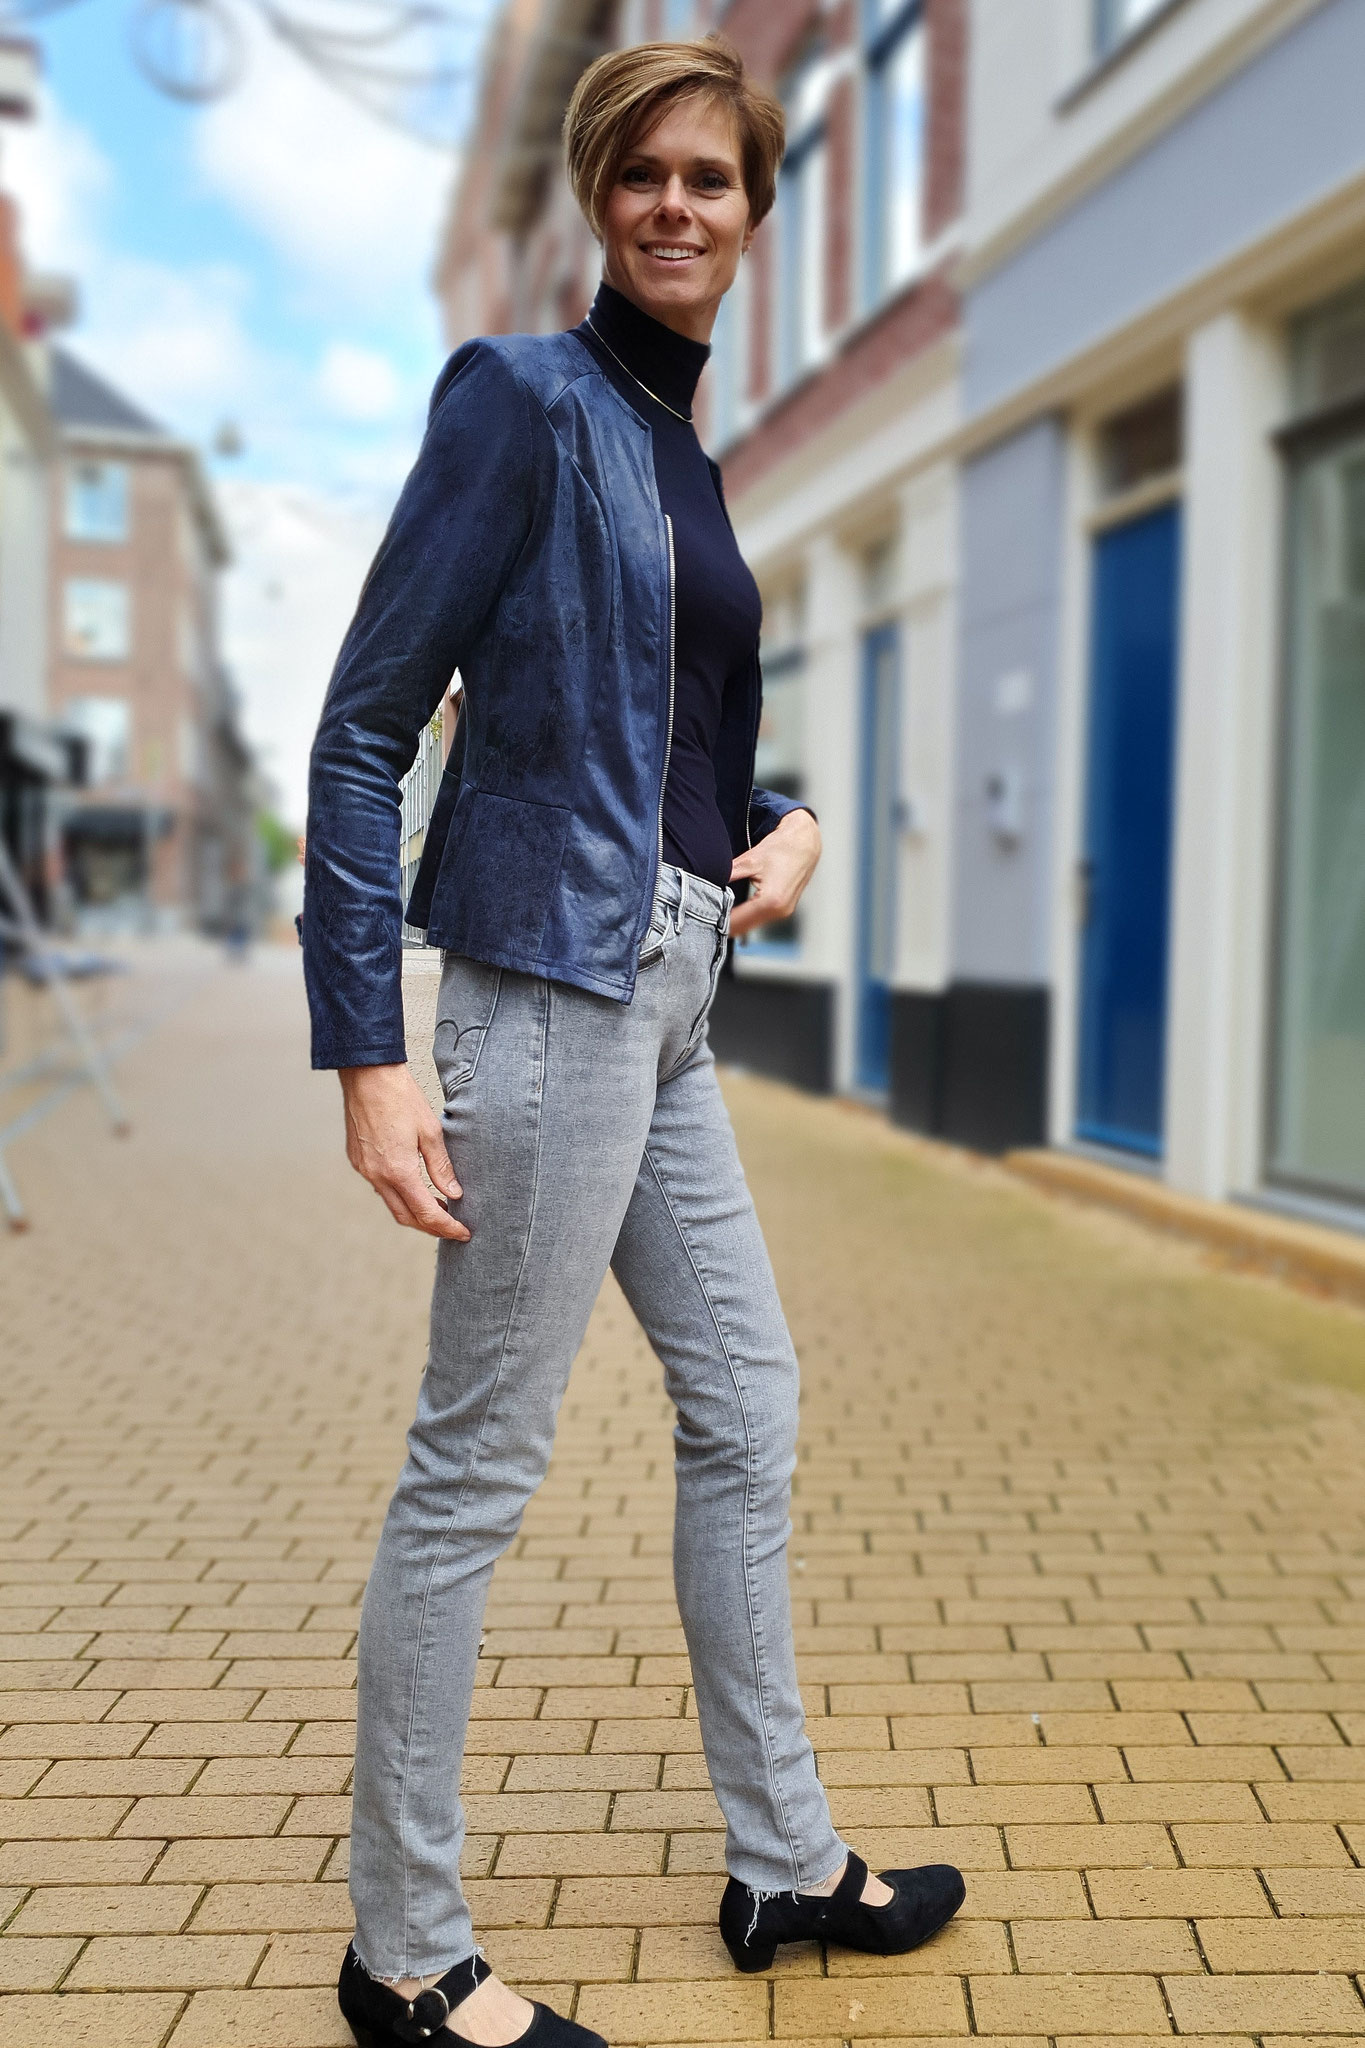 Jack zipper van het merk Lange Dame en een jeans van Mavi, model nicole